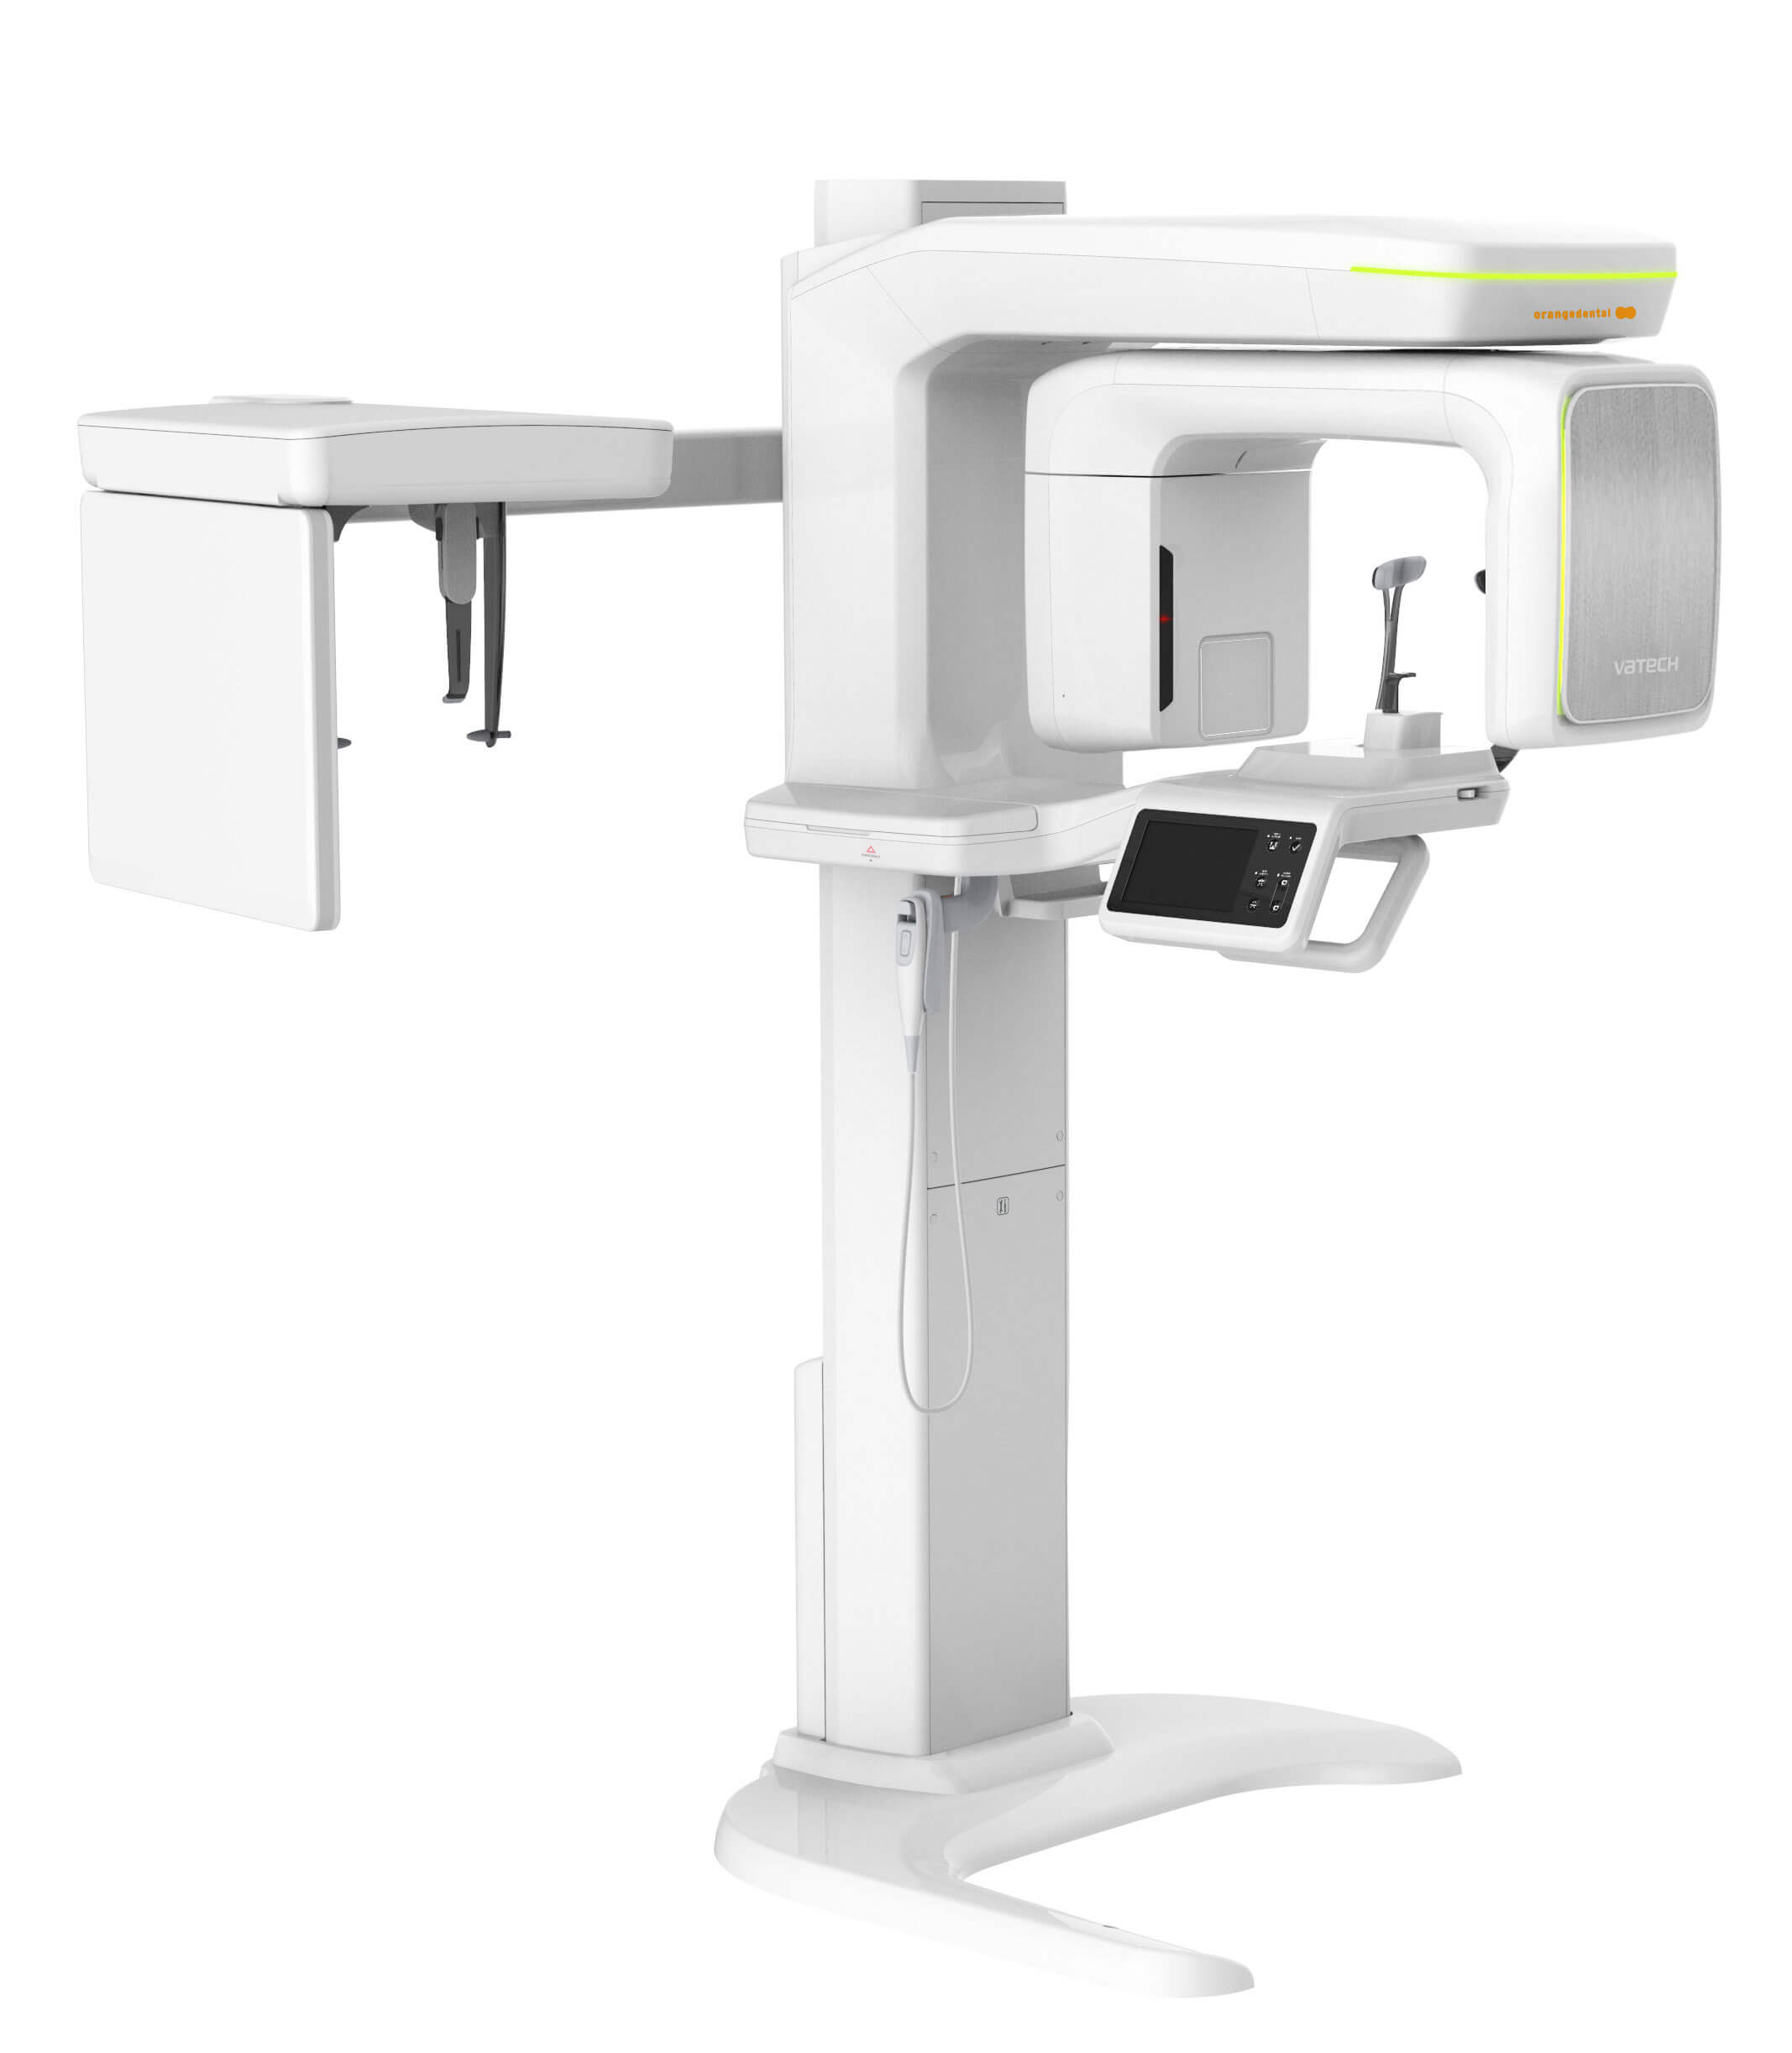 Digitaler Volumentomograph (DVT) mit extrem niedriger Strahlenbelastung für präzise Röntgenaufnahmen von Zähnen, Kieferknochen und Nerven